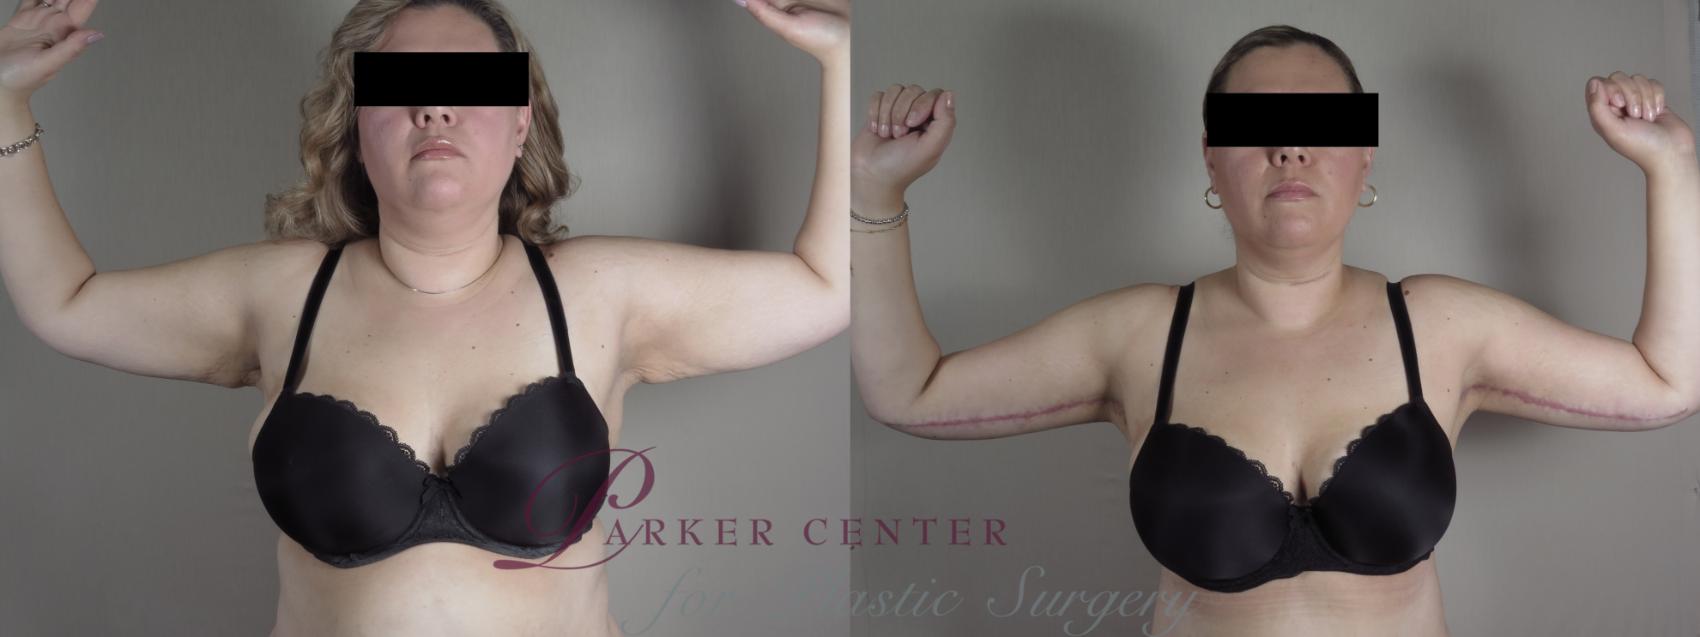 Upper Arm Rejuvenation Case 1316 Before & After Front | Paramus, NJ | Parker Center for Plastic Surgery